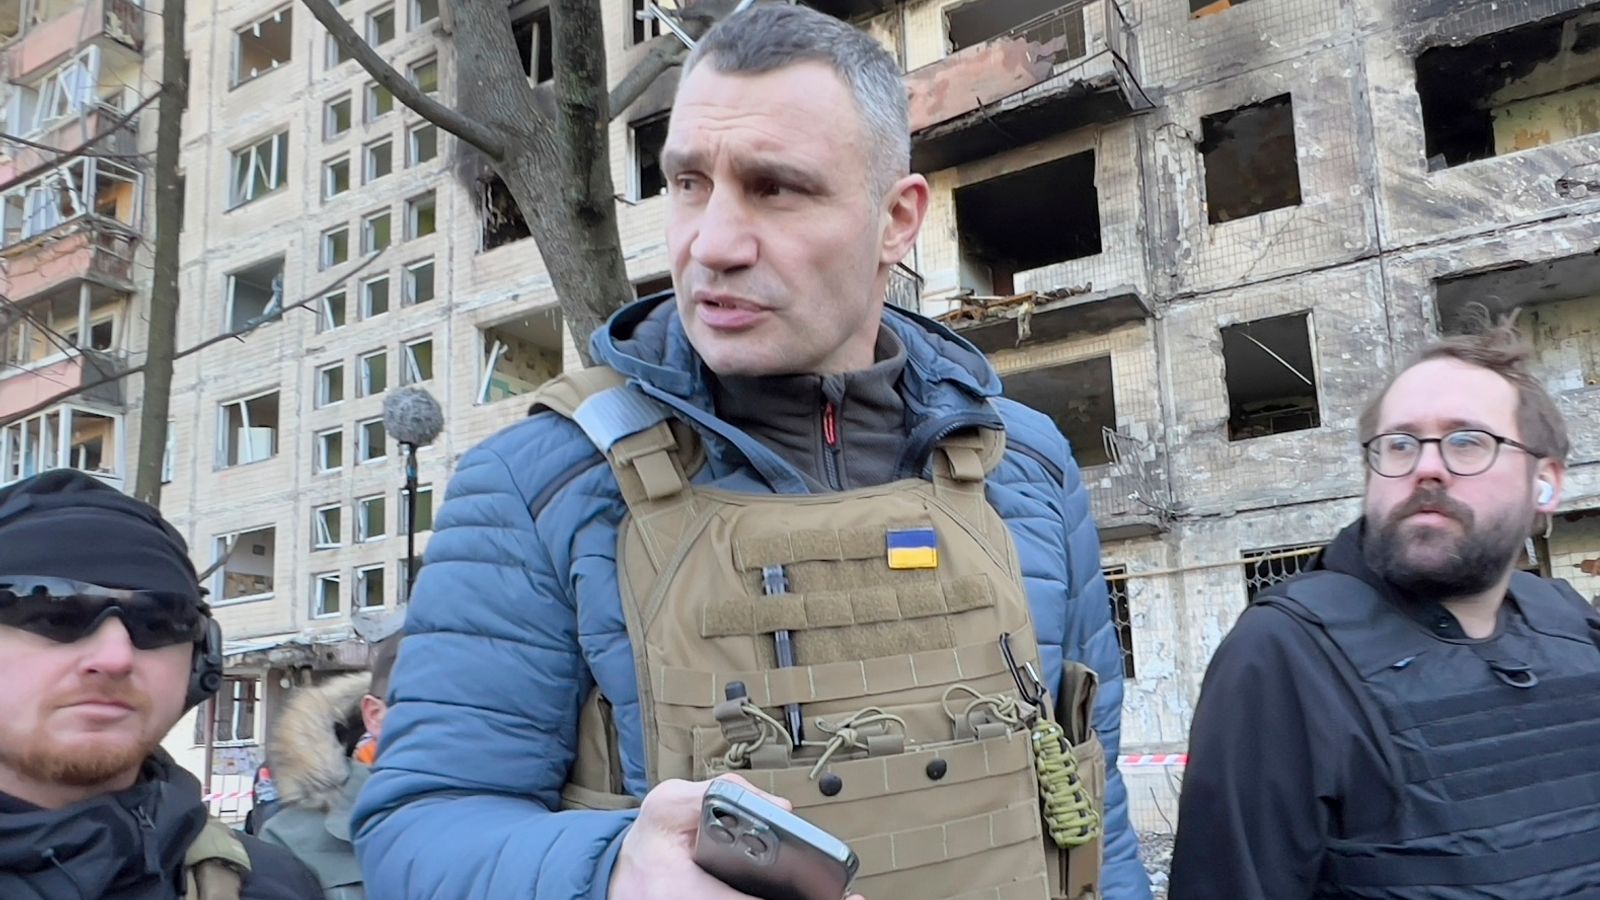 El ex campeón de boxeo Vitali Klitschko defiende la capital de Ucrania, Kiev, como alcalde |  Noticias de boxeo